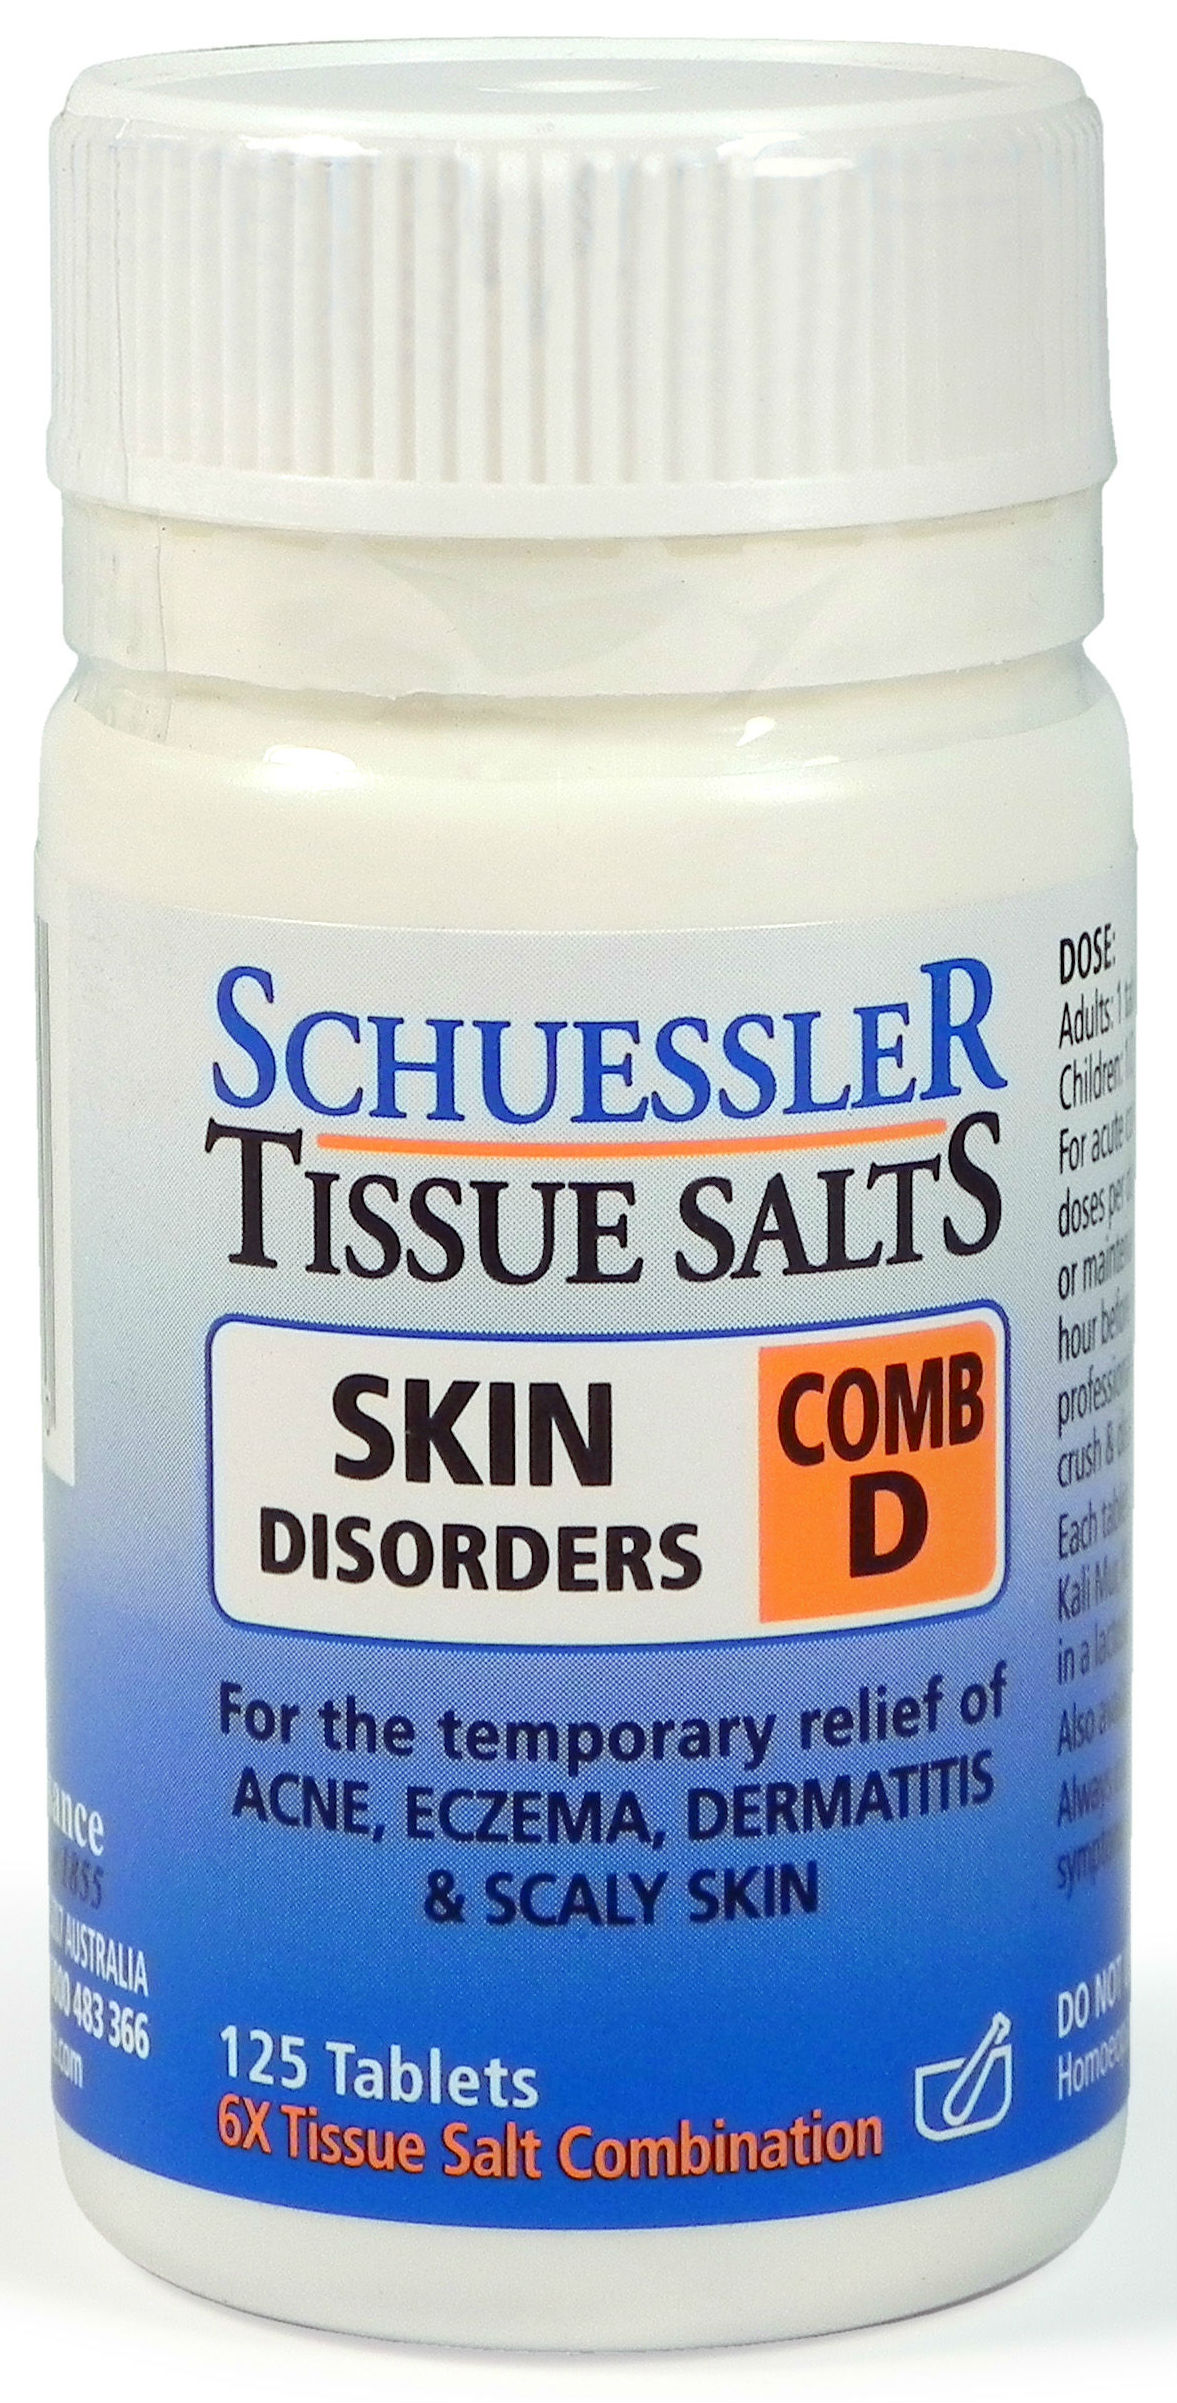 Schuessler Tissue Salts Comb D X 125